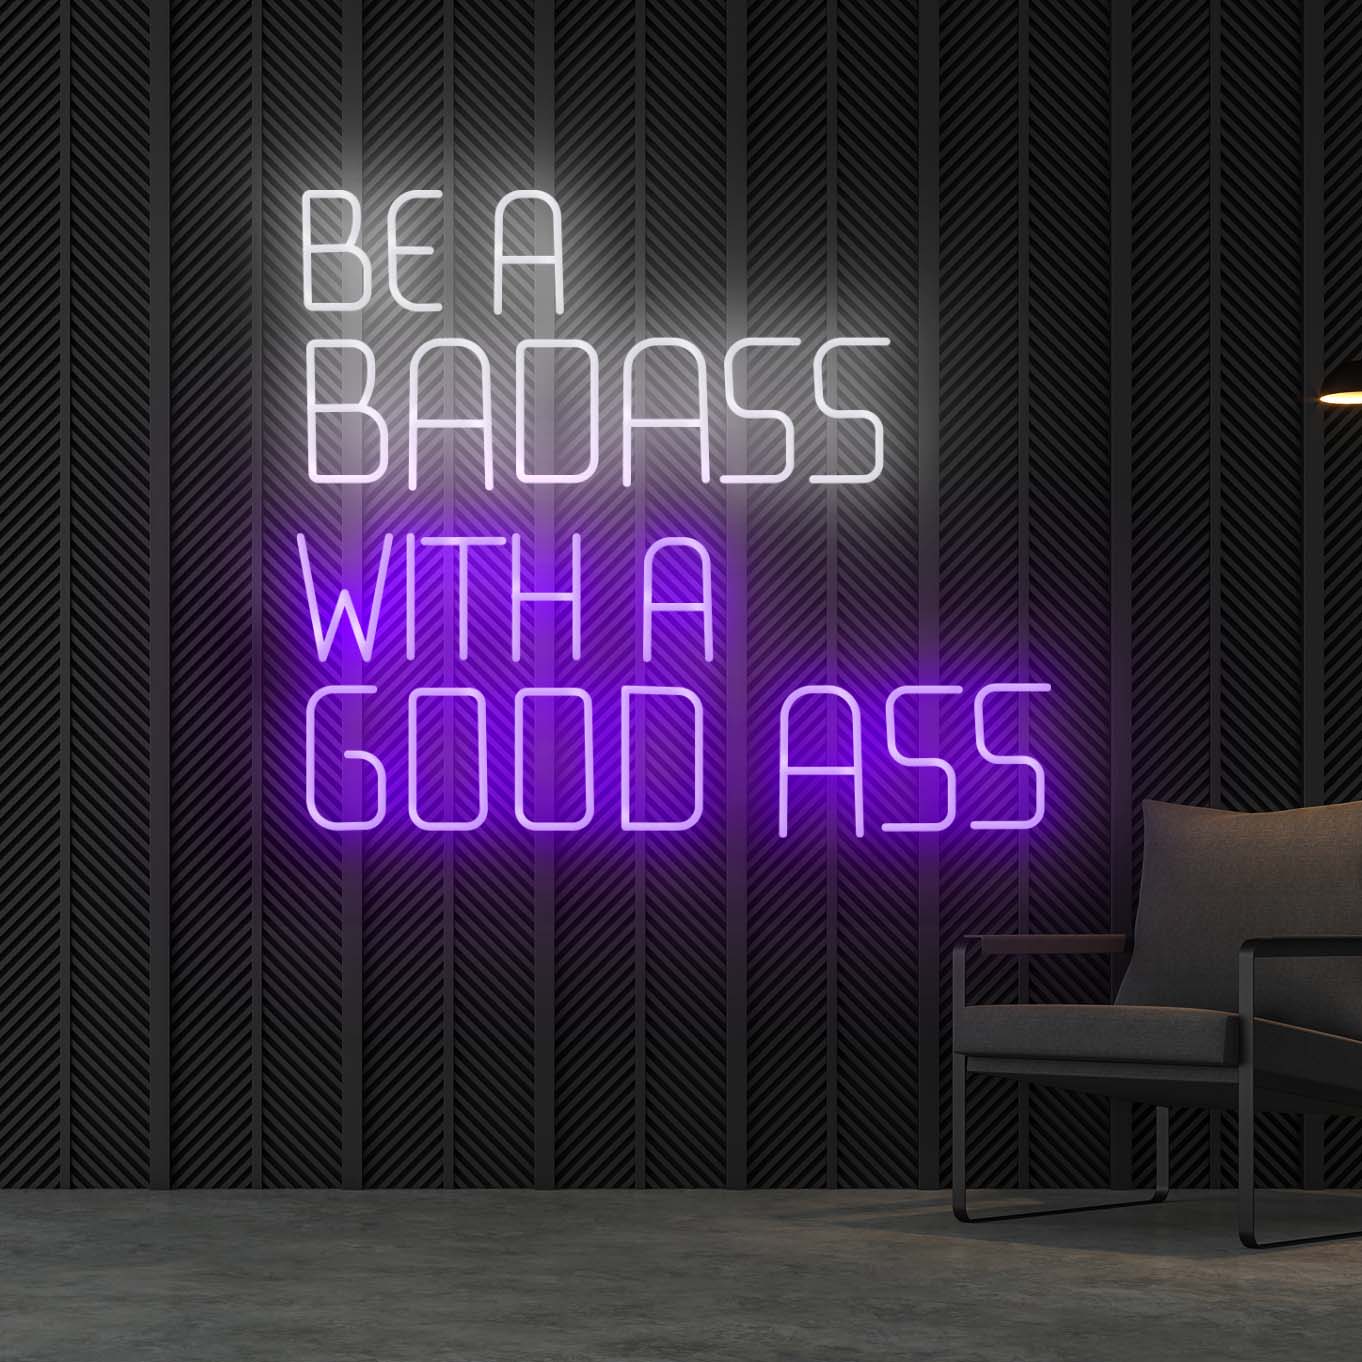 be a badass with a good ass